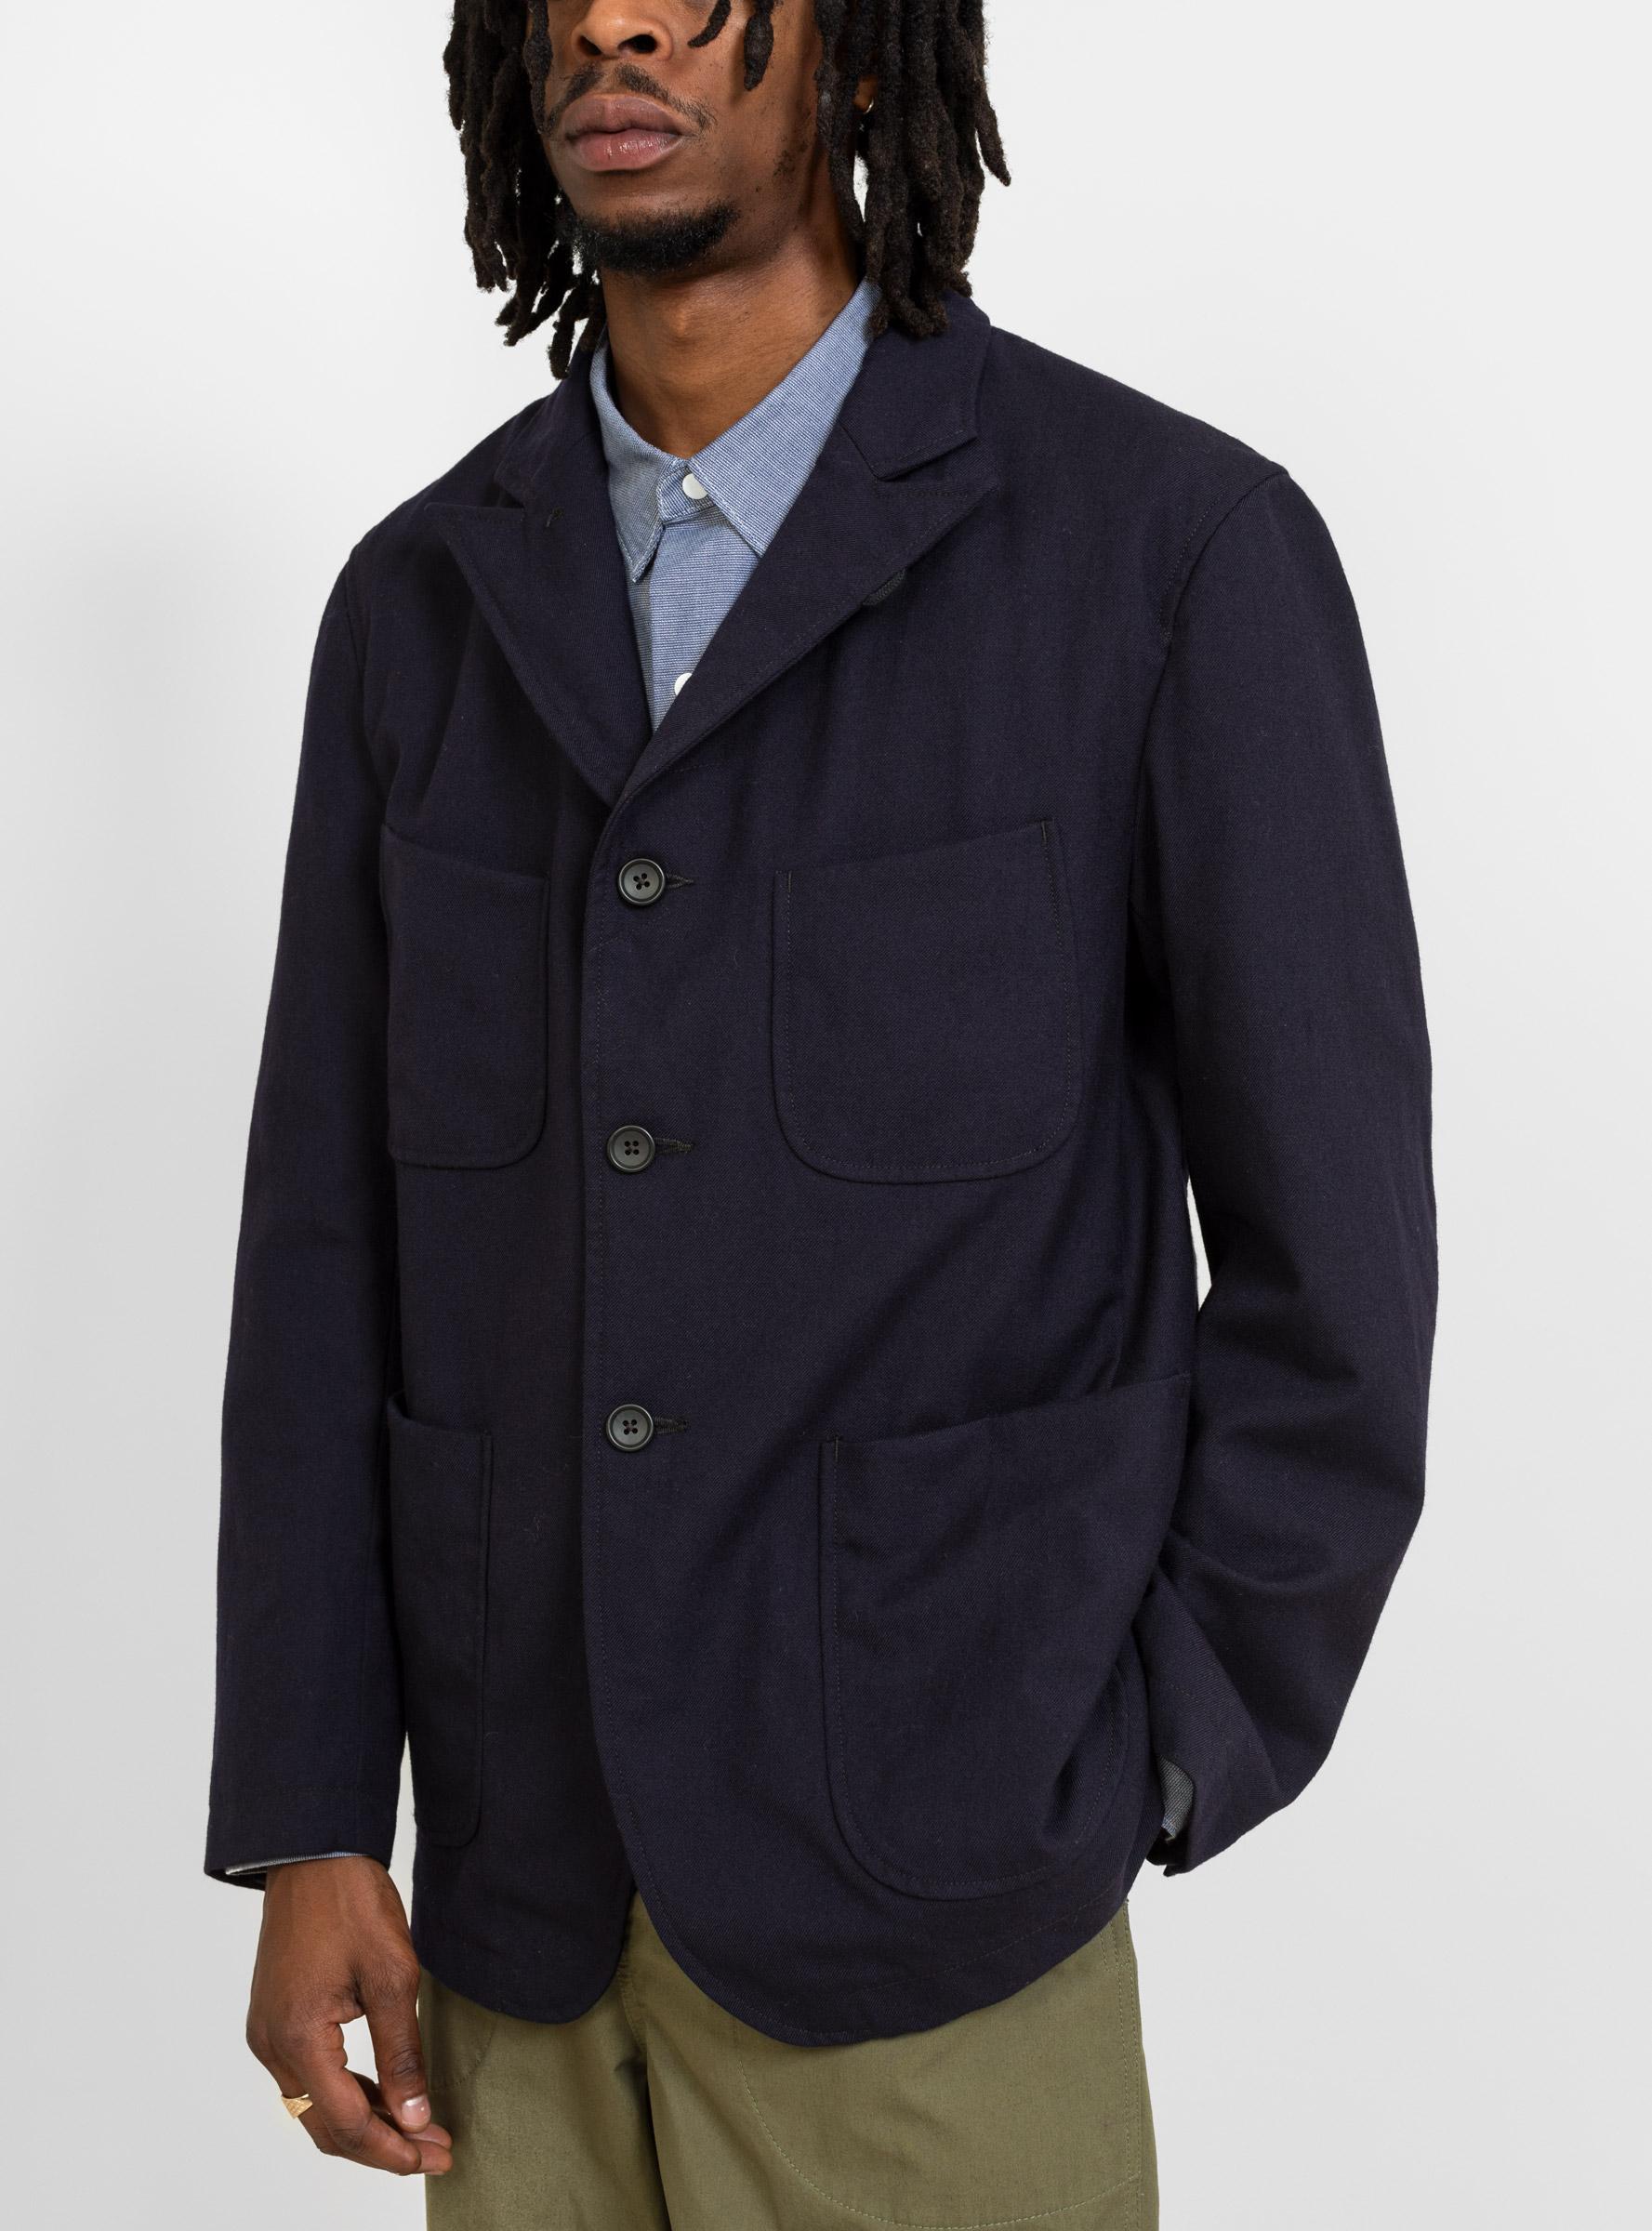 Engineered Garments Nb Jacket Uniform Serge Wool Dark Navy in Blue